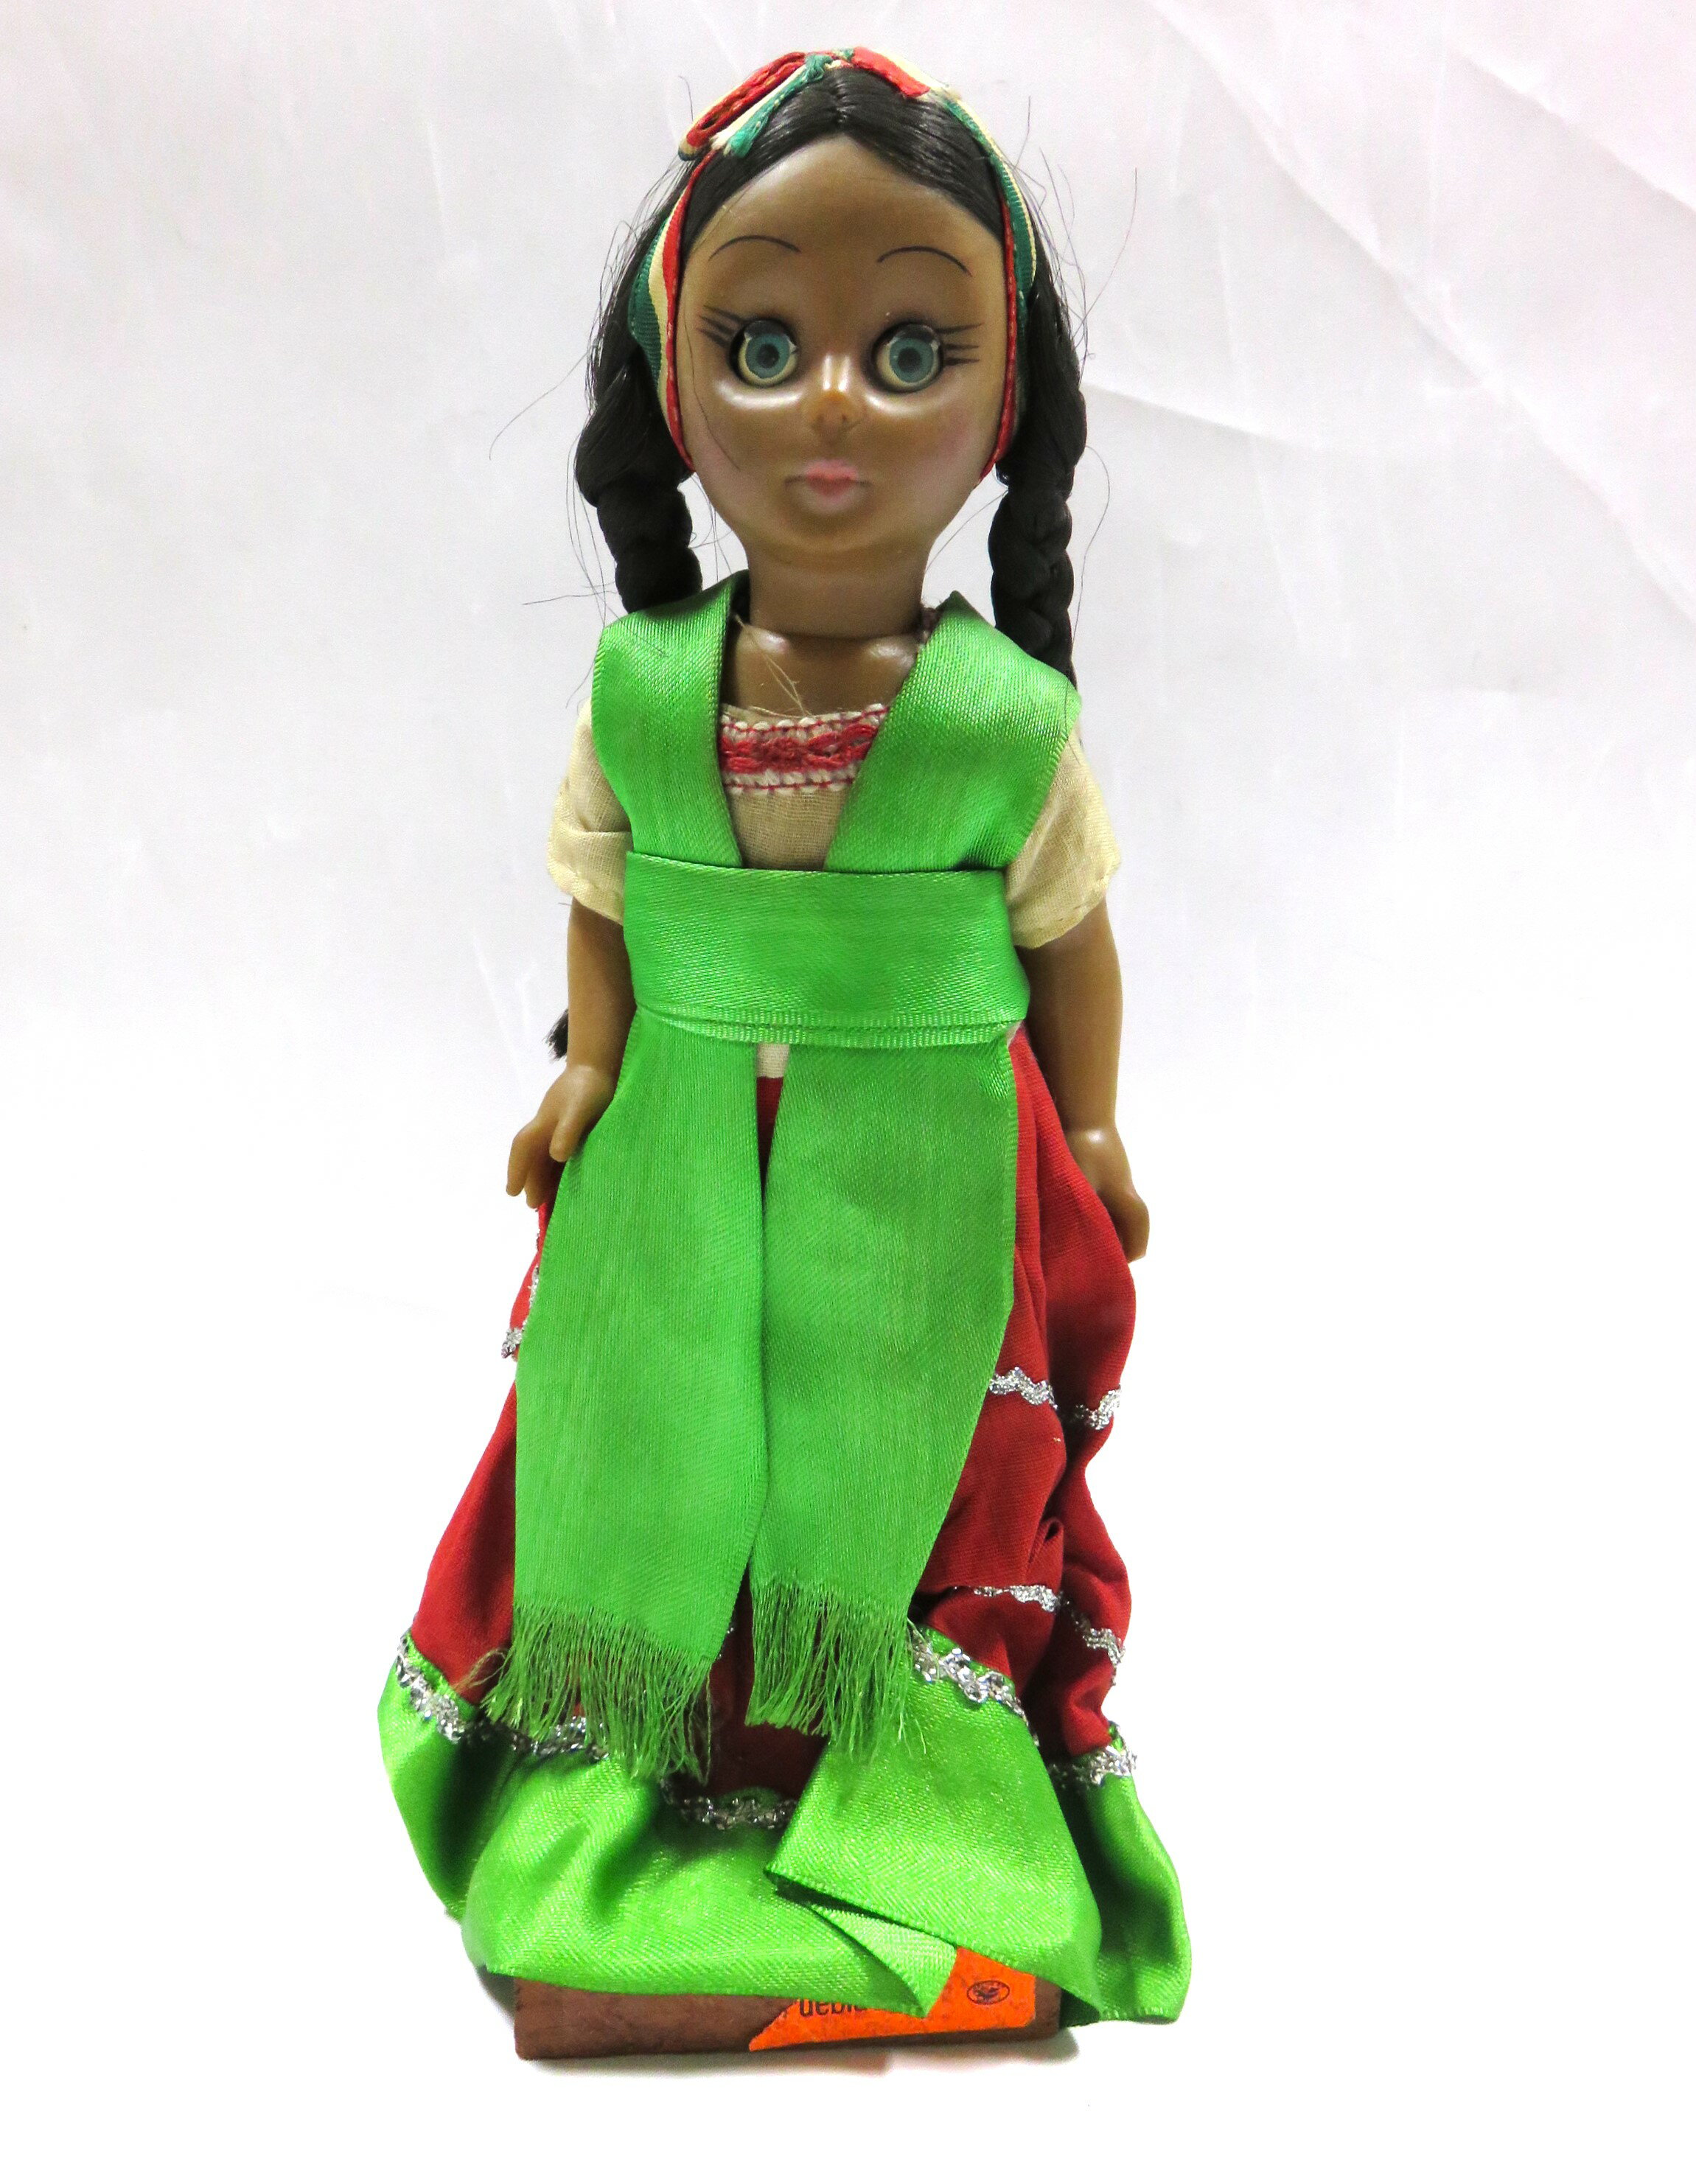 ＜サイズ＞高さ：24.5cm ×幅：11cm×厚み：5cm 褐色の肌にグリーンのレボソが良く似合う女の子。 ヘア・バンドはメキシコ国旗カラーです。 ＊画像と実物の色合いは若干異なることがあります。